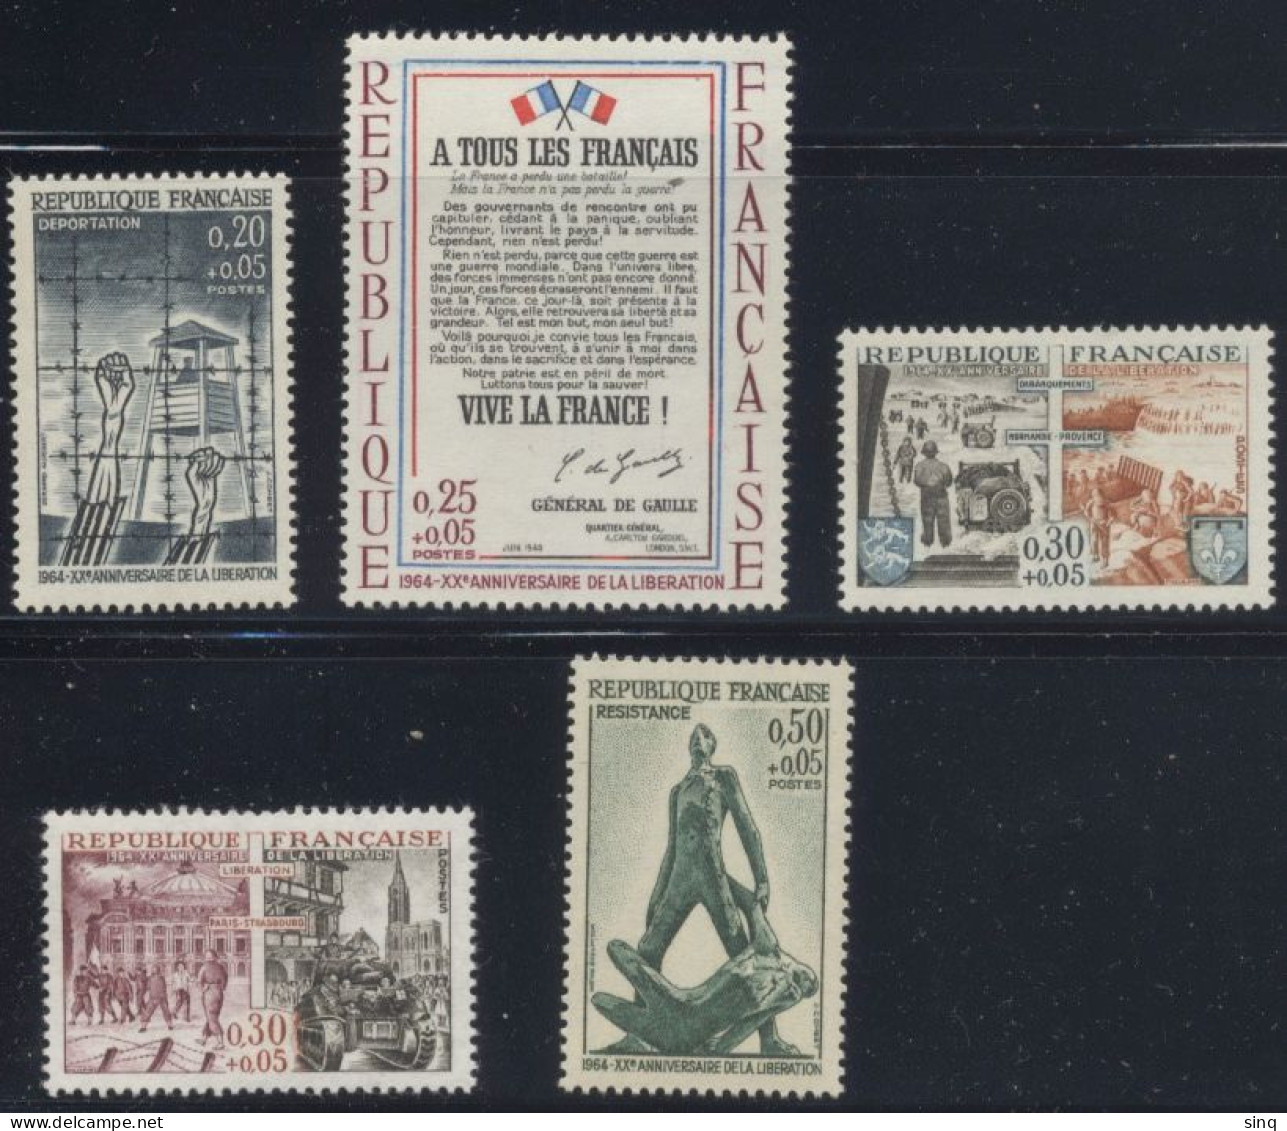 N° 1407 1408 1409 1410 1411 Série 20e Anniversaire De La Libération - Unused Stamps